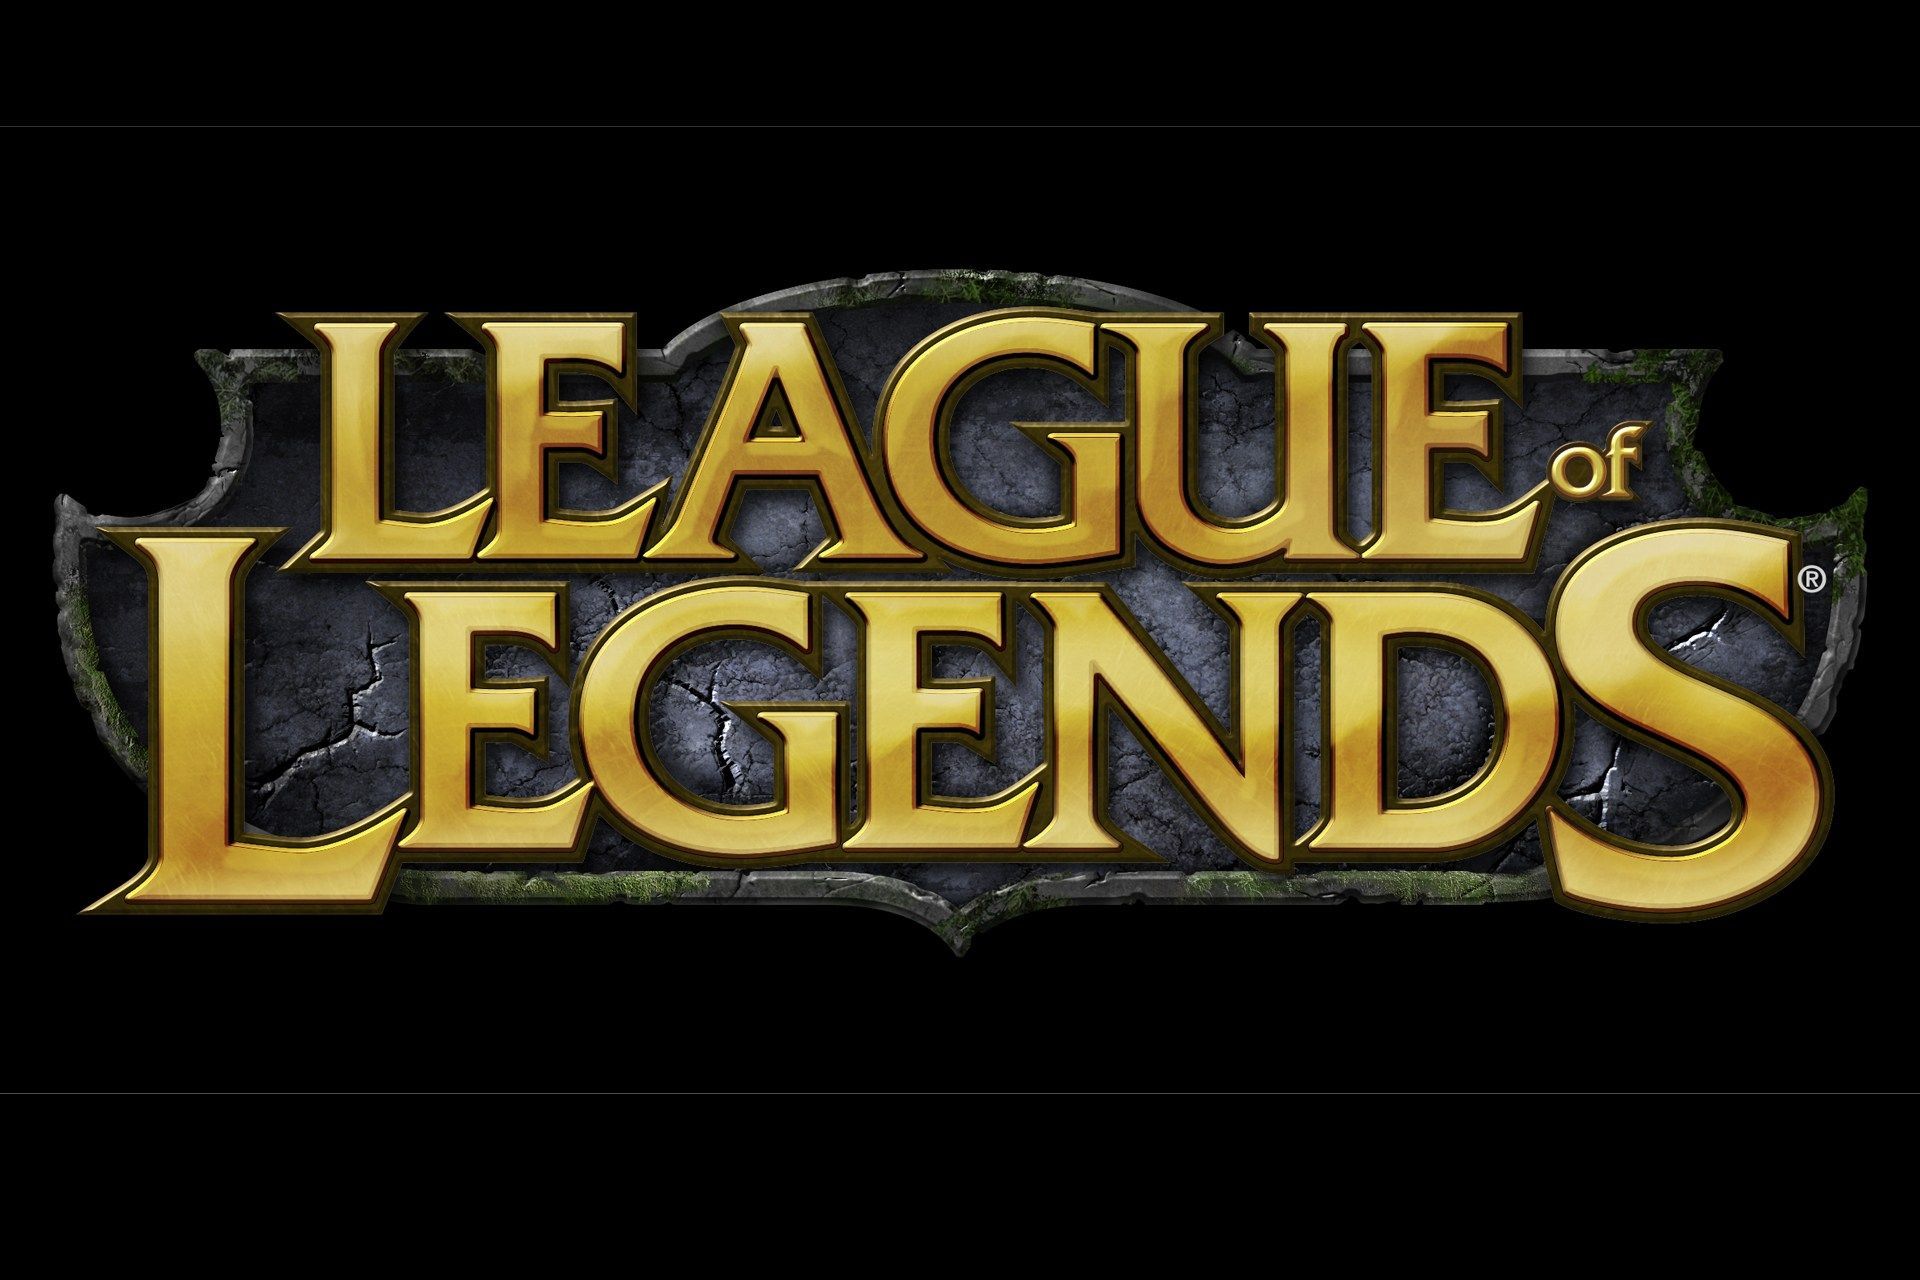 1033 - Cuánto sabes de League of Legends